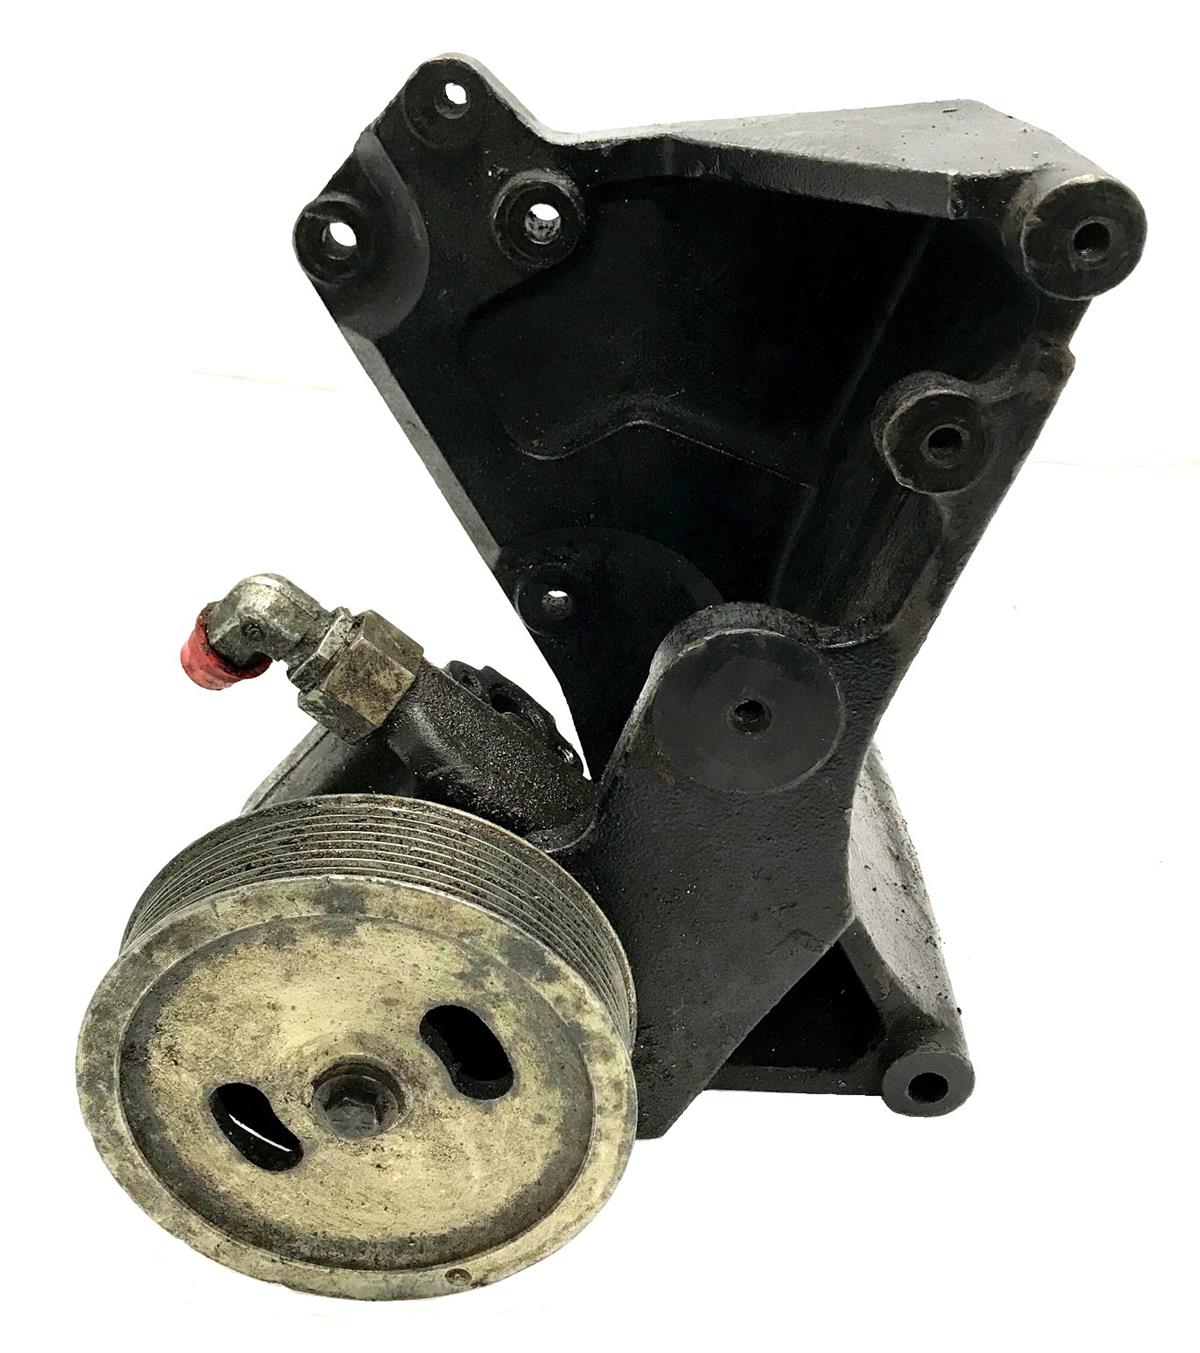 HM-1098 | HM-1098  Power Steering Pump With Mounting Bracket HMMWV  (1)(USED).jpg